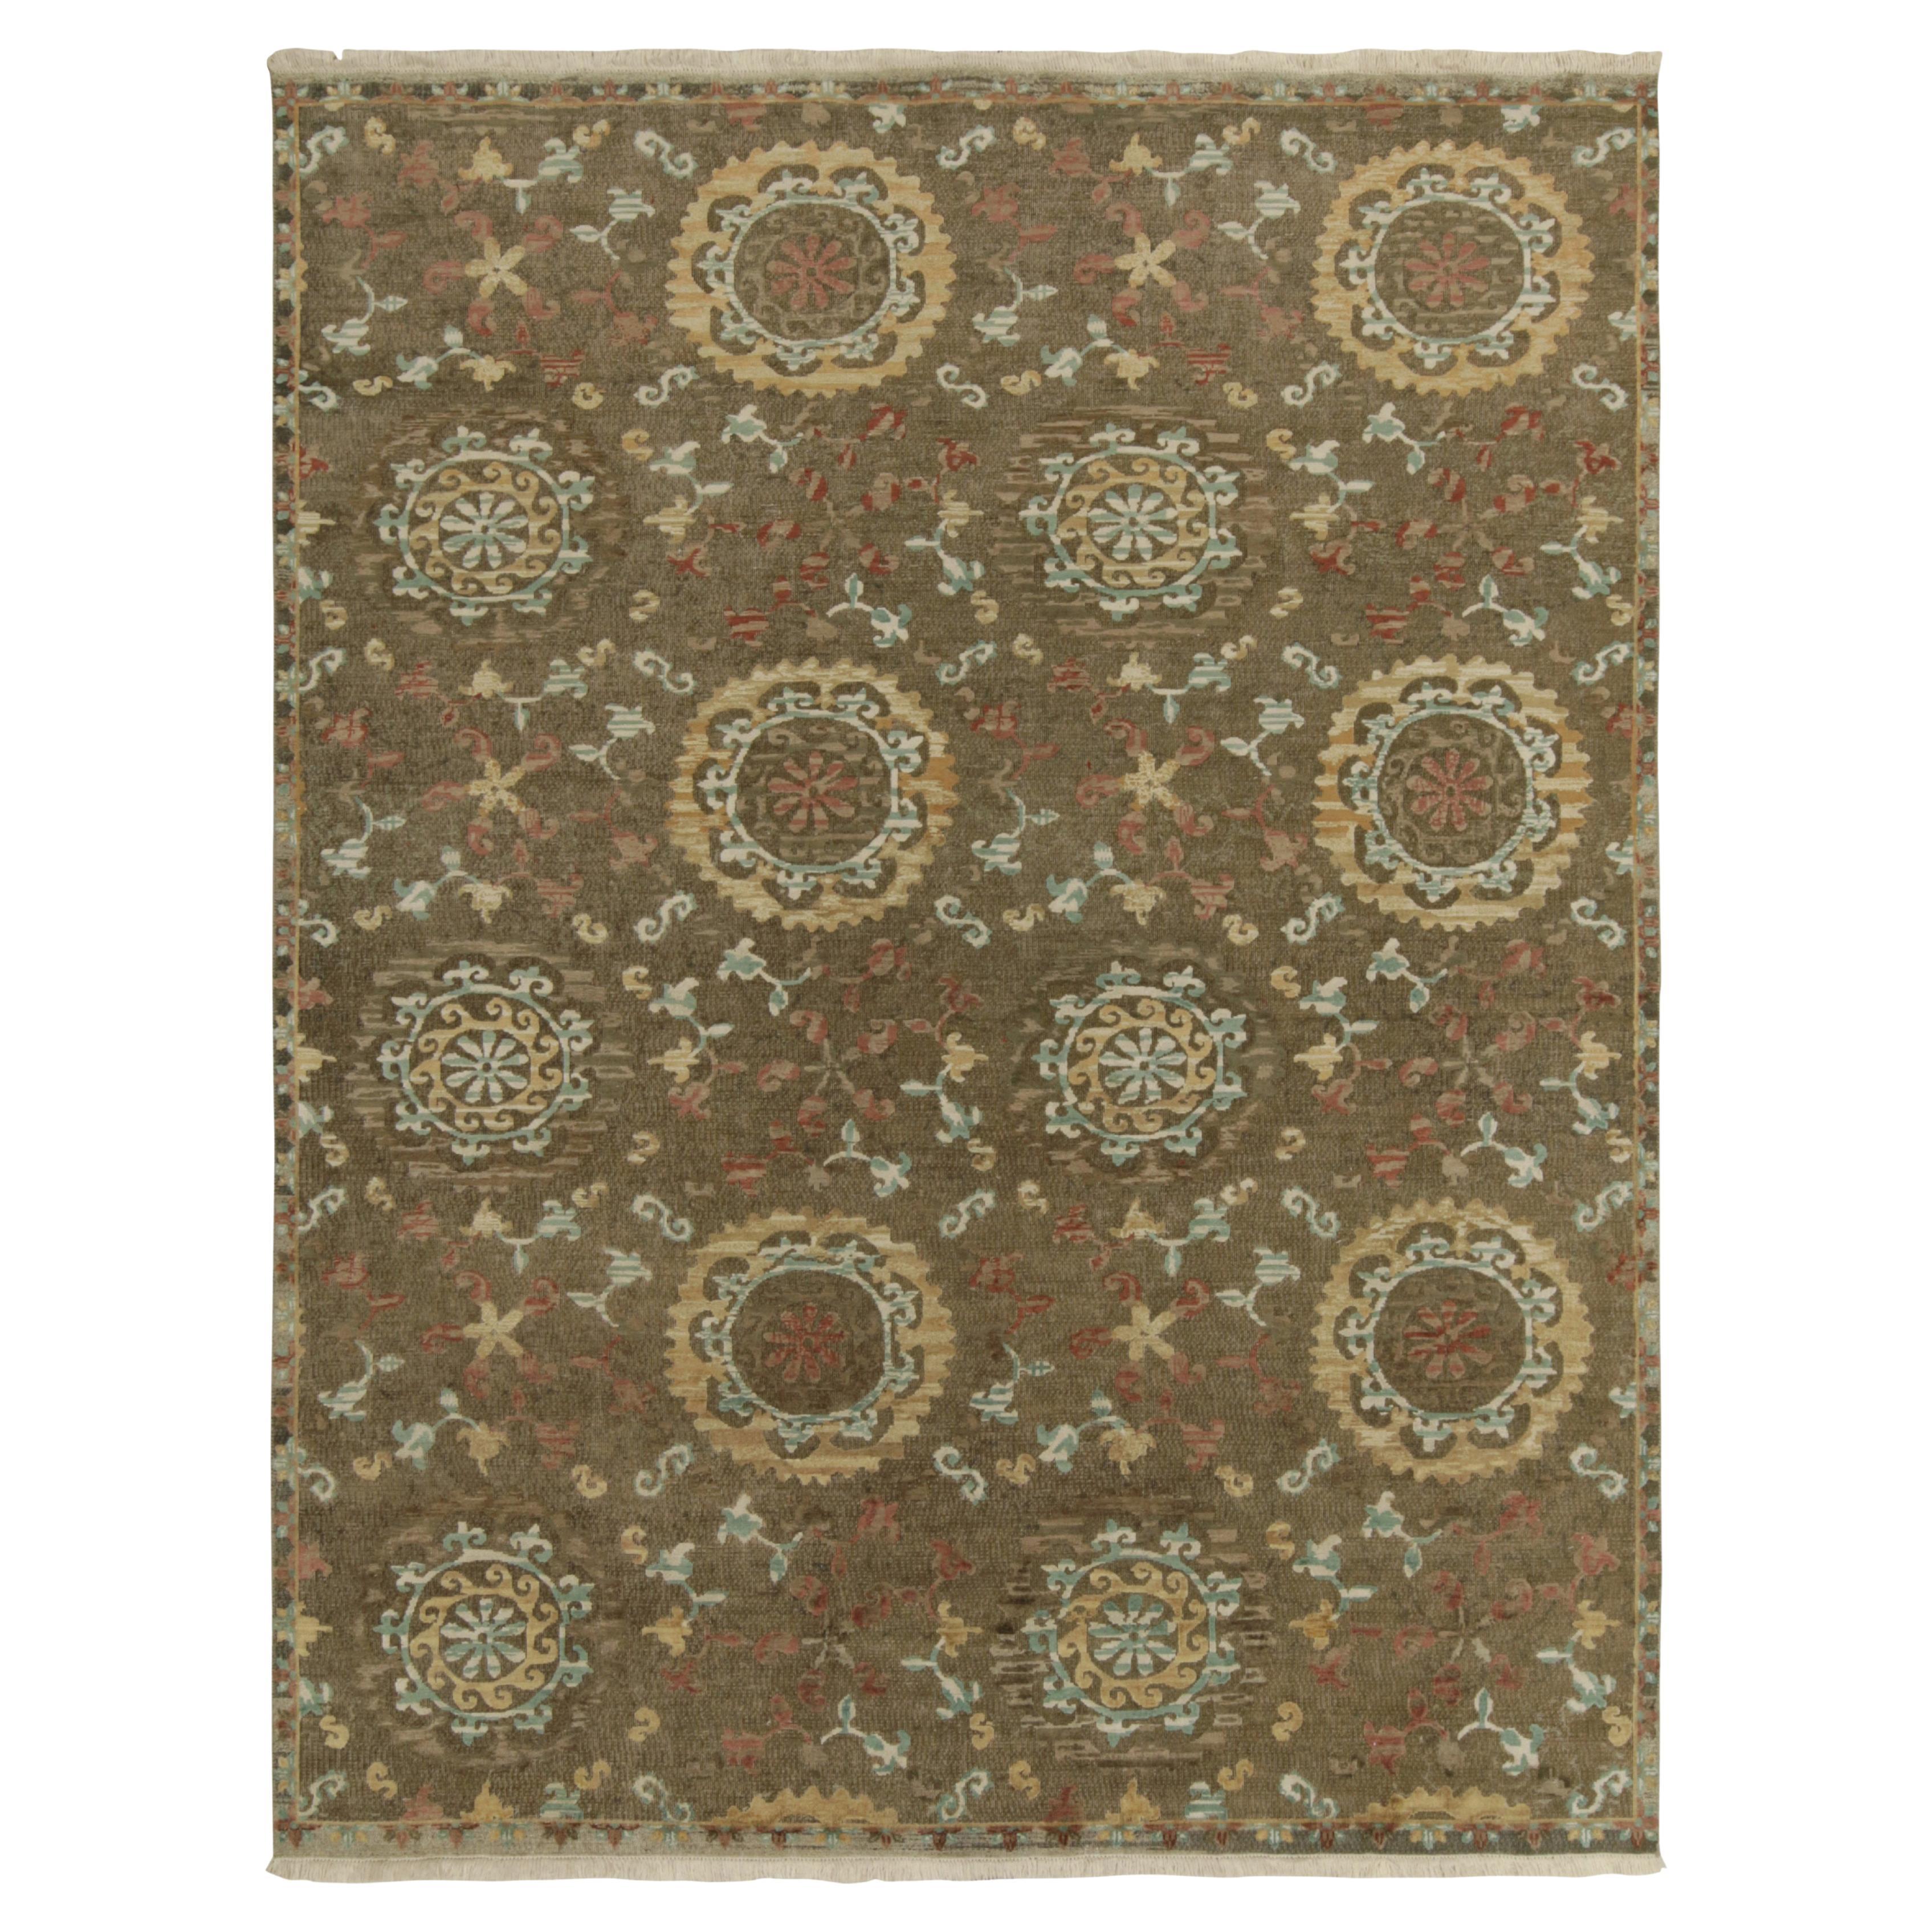 Klassischer Teppich im spanischen Stil von Teppich & Kilims in Beige-Braun, Gold und Blau mit Medaillons